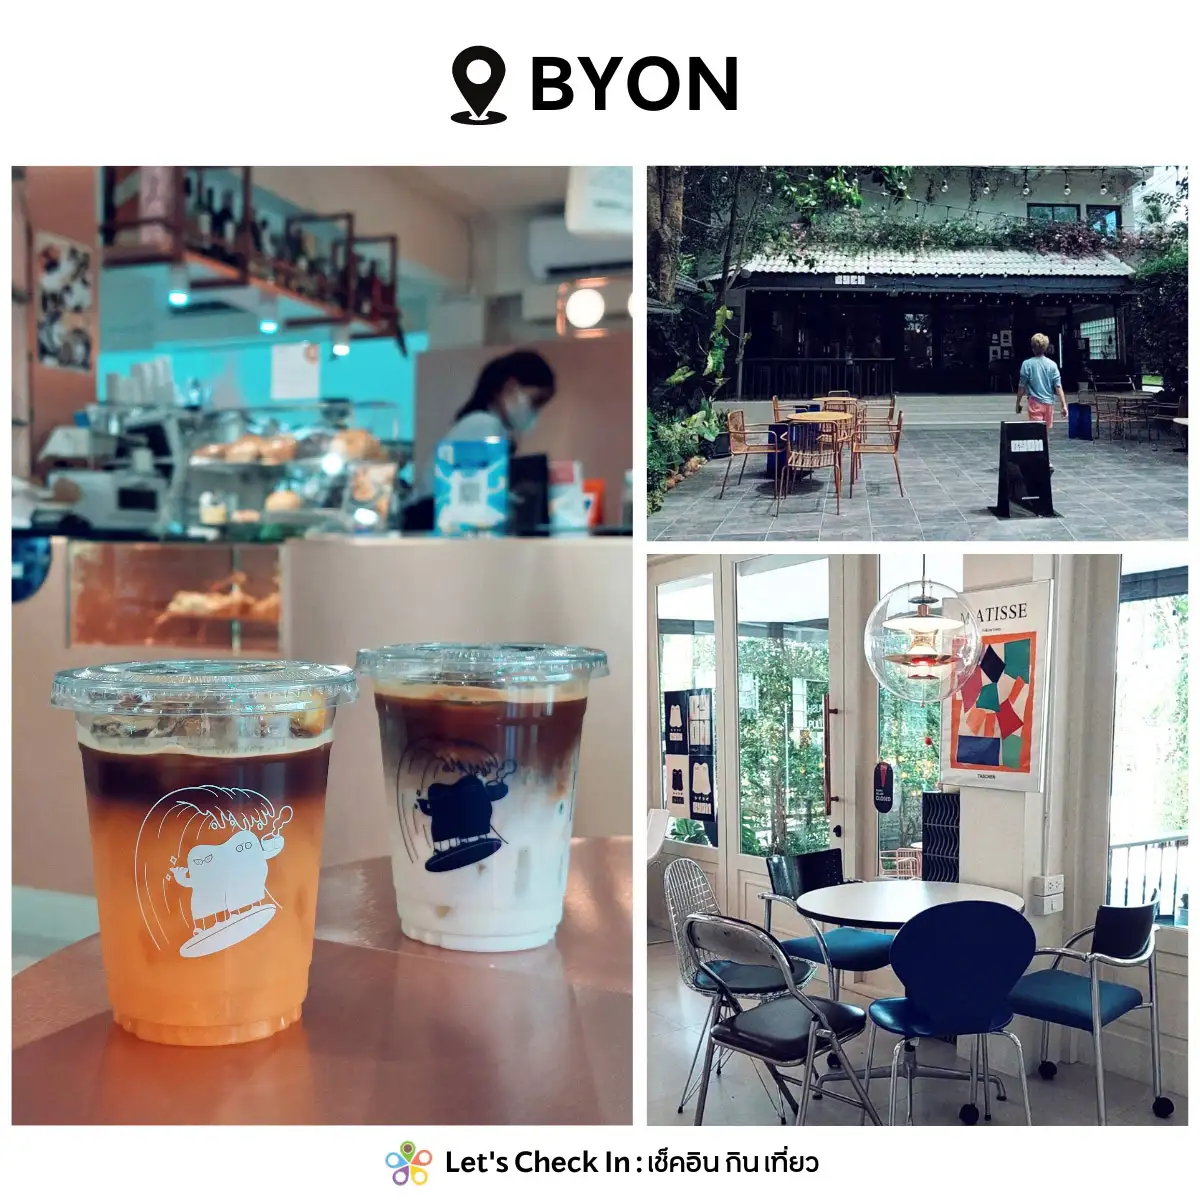 Byon Coffee Bar